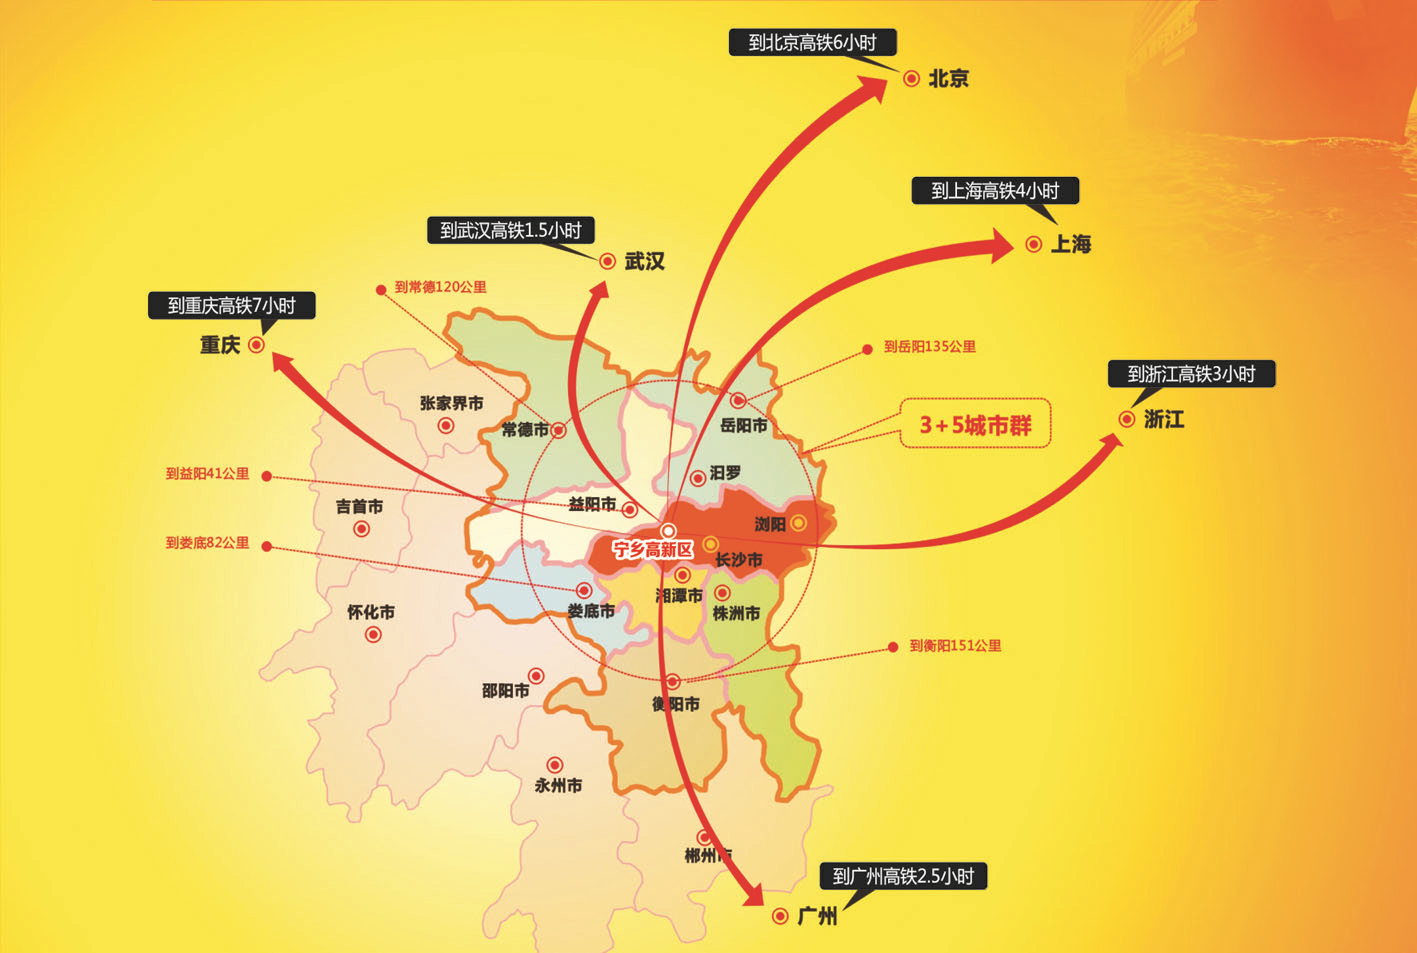 宁乡高新区:长沙市最具活力的投资热土